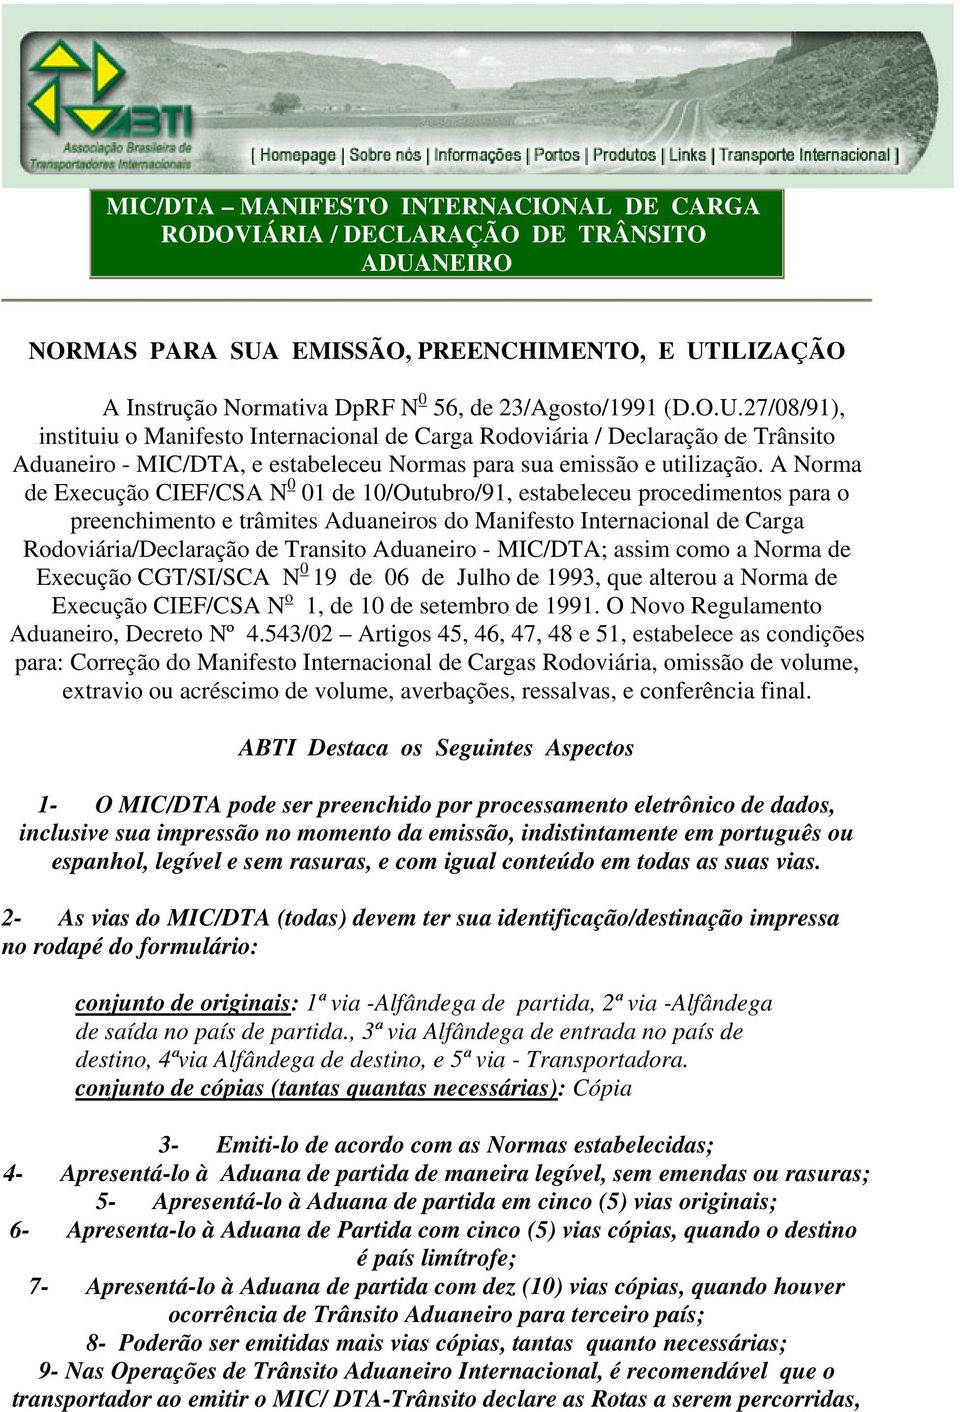 A Norma de Execução CIEF/CSA N 0 01 de 10/Outubro/91, estabeleceu procedimentos para o preenchimento e trâmites Aduaneiros do Manifesto Internacional de Carga Rodoviária/Declaração de Transito